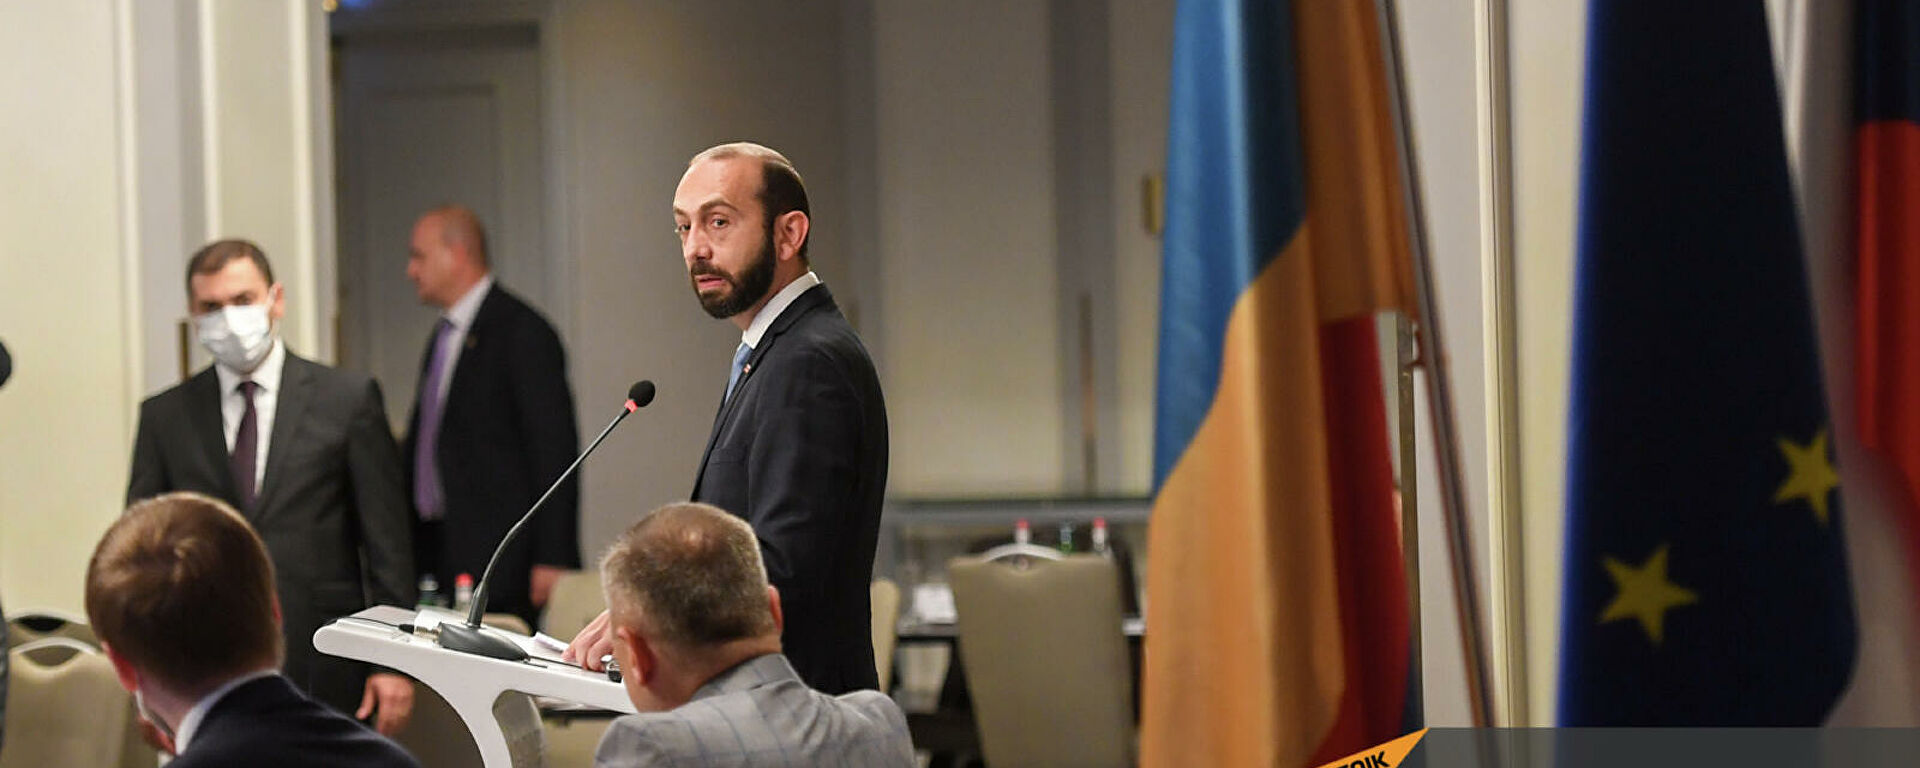 Армения удовлетворена позицией Чехии по карабахскому вопросу: министр